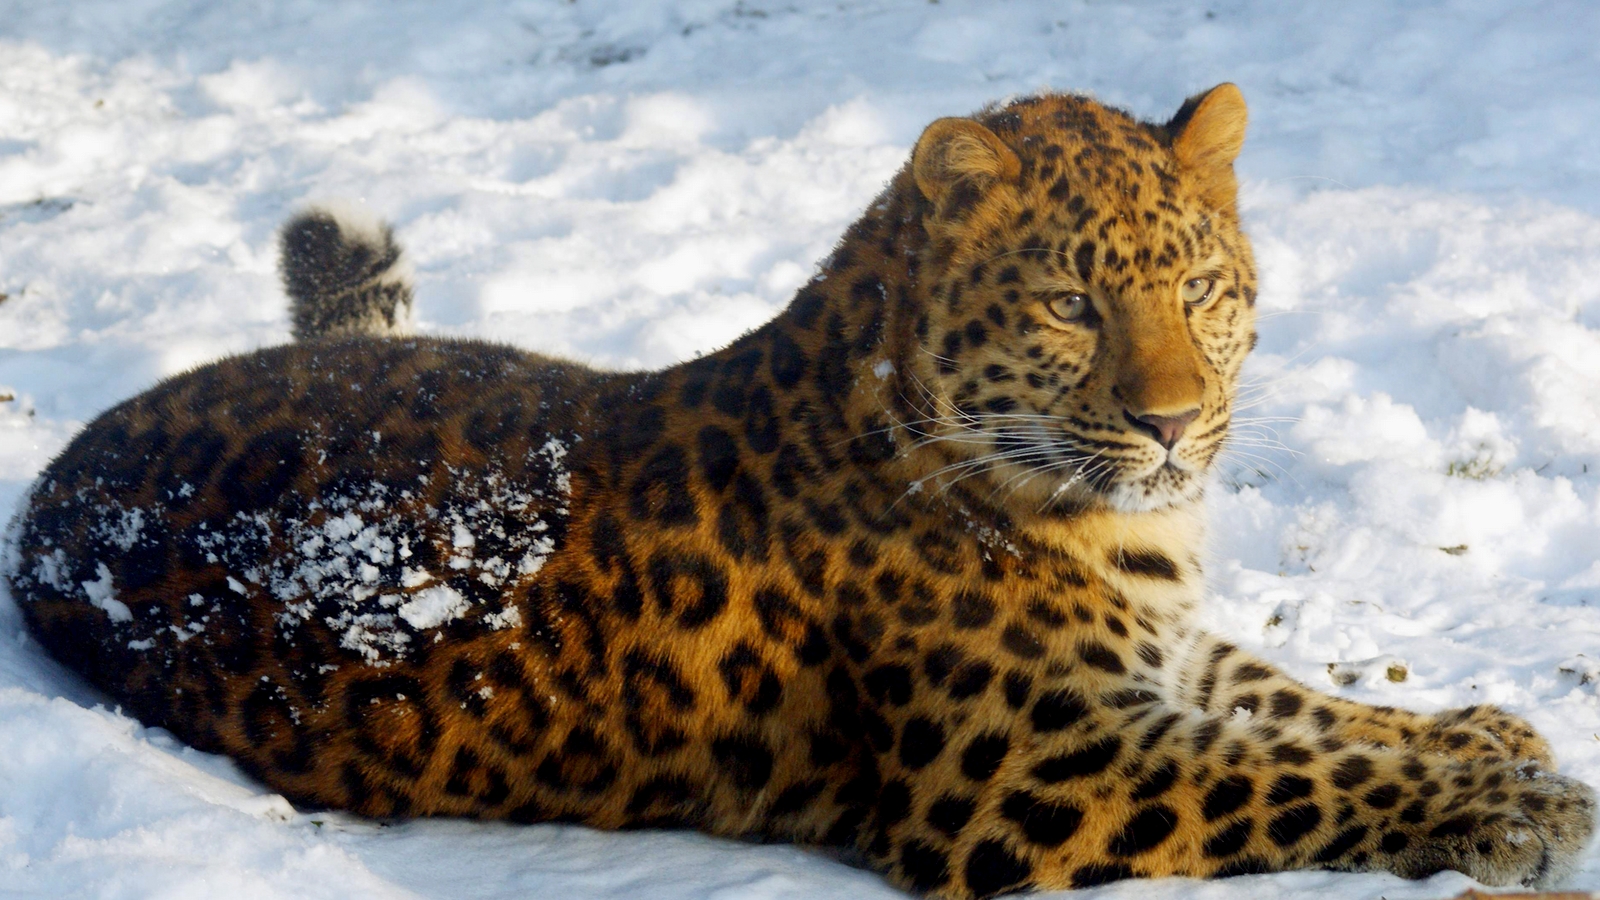 Скачать обои бесплатно Животные, Леопард картинка на рабочий стол ПК